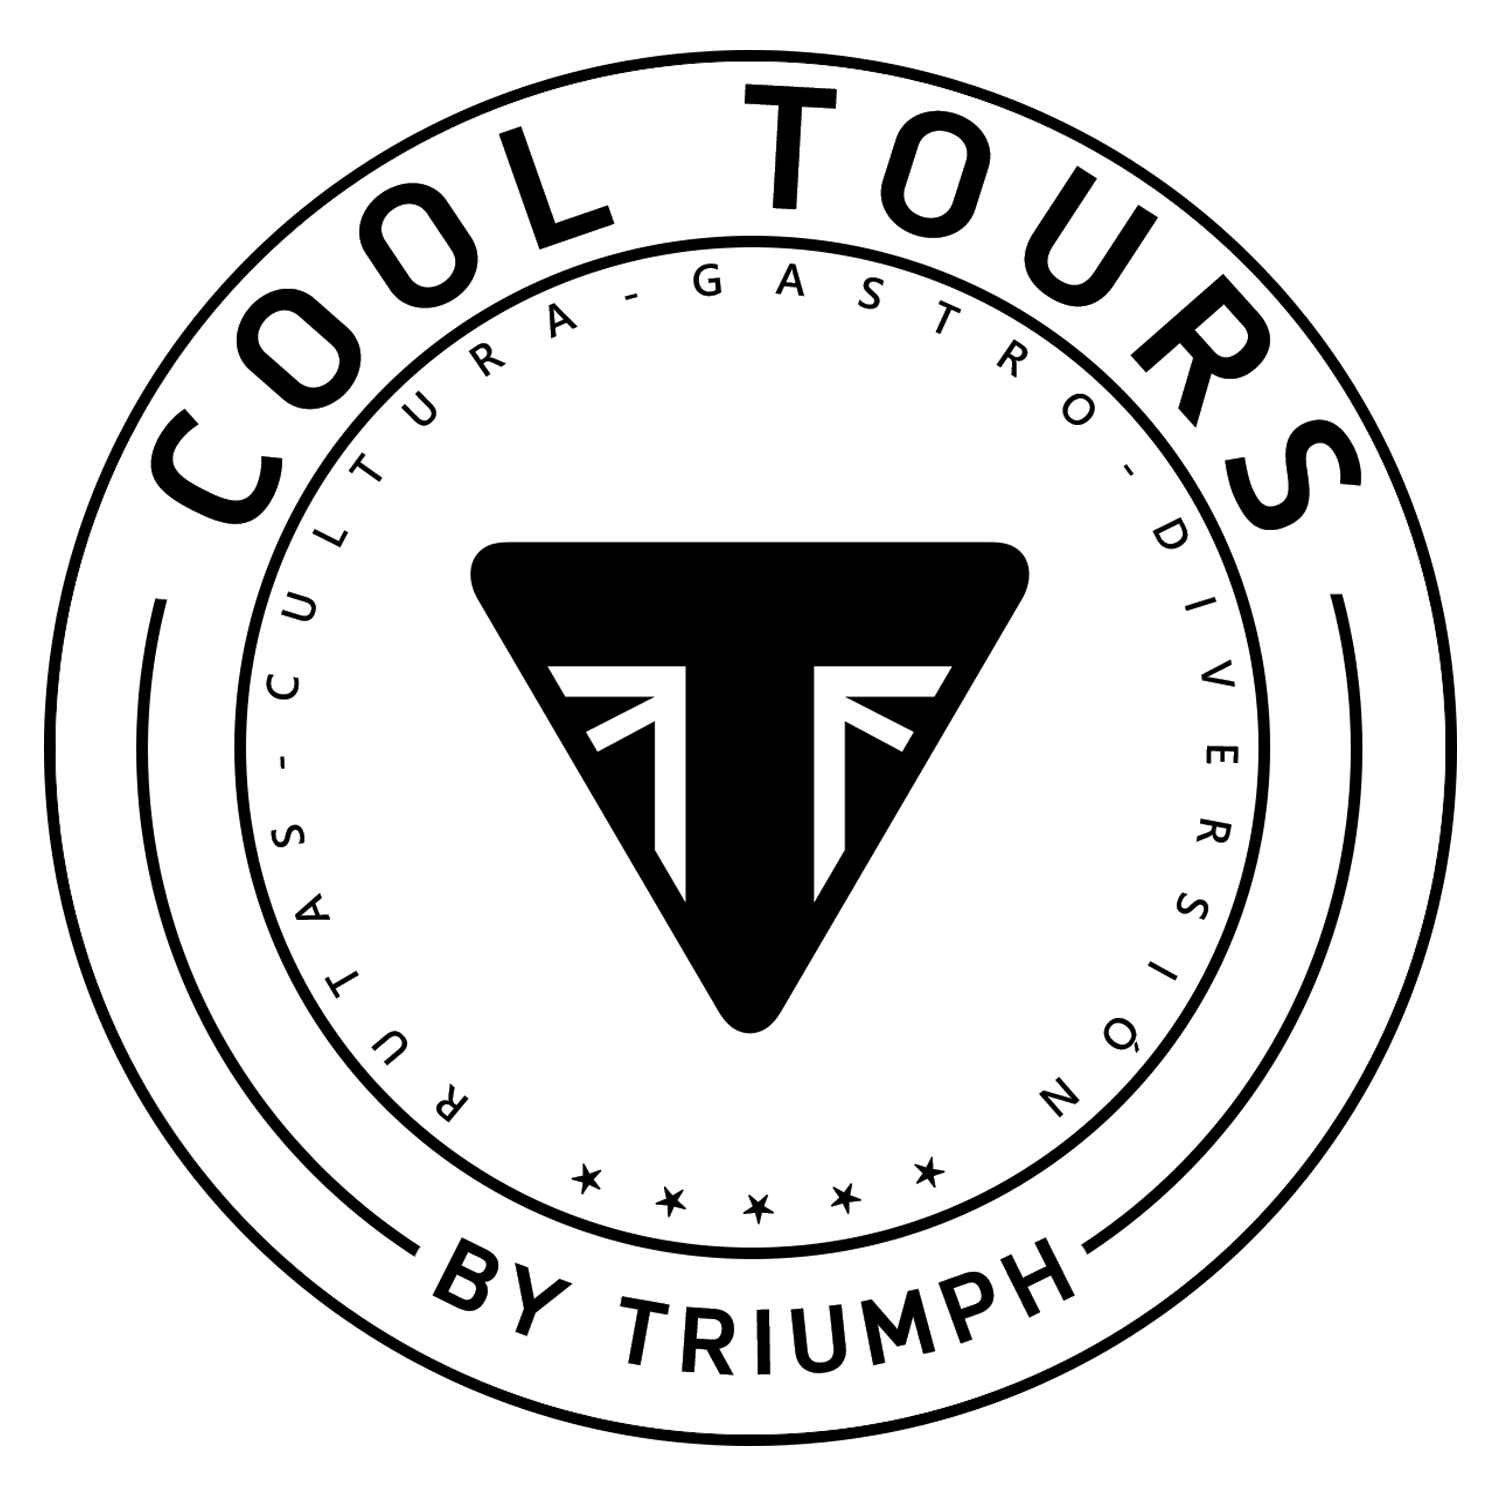 Triumph Cool Tours